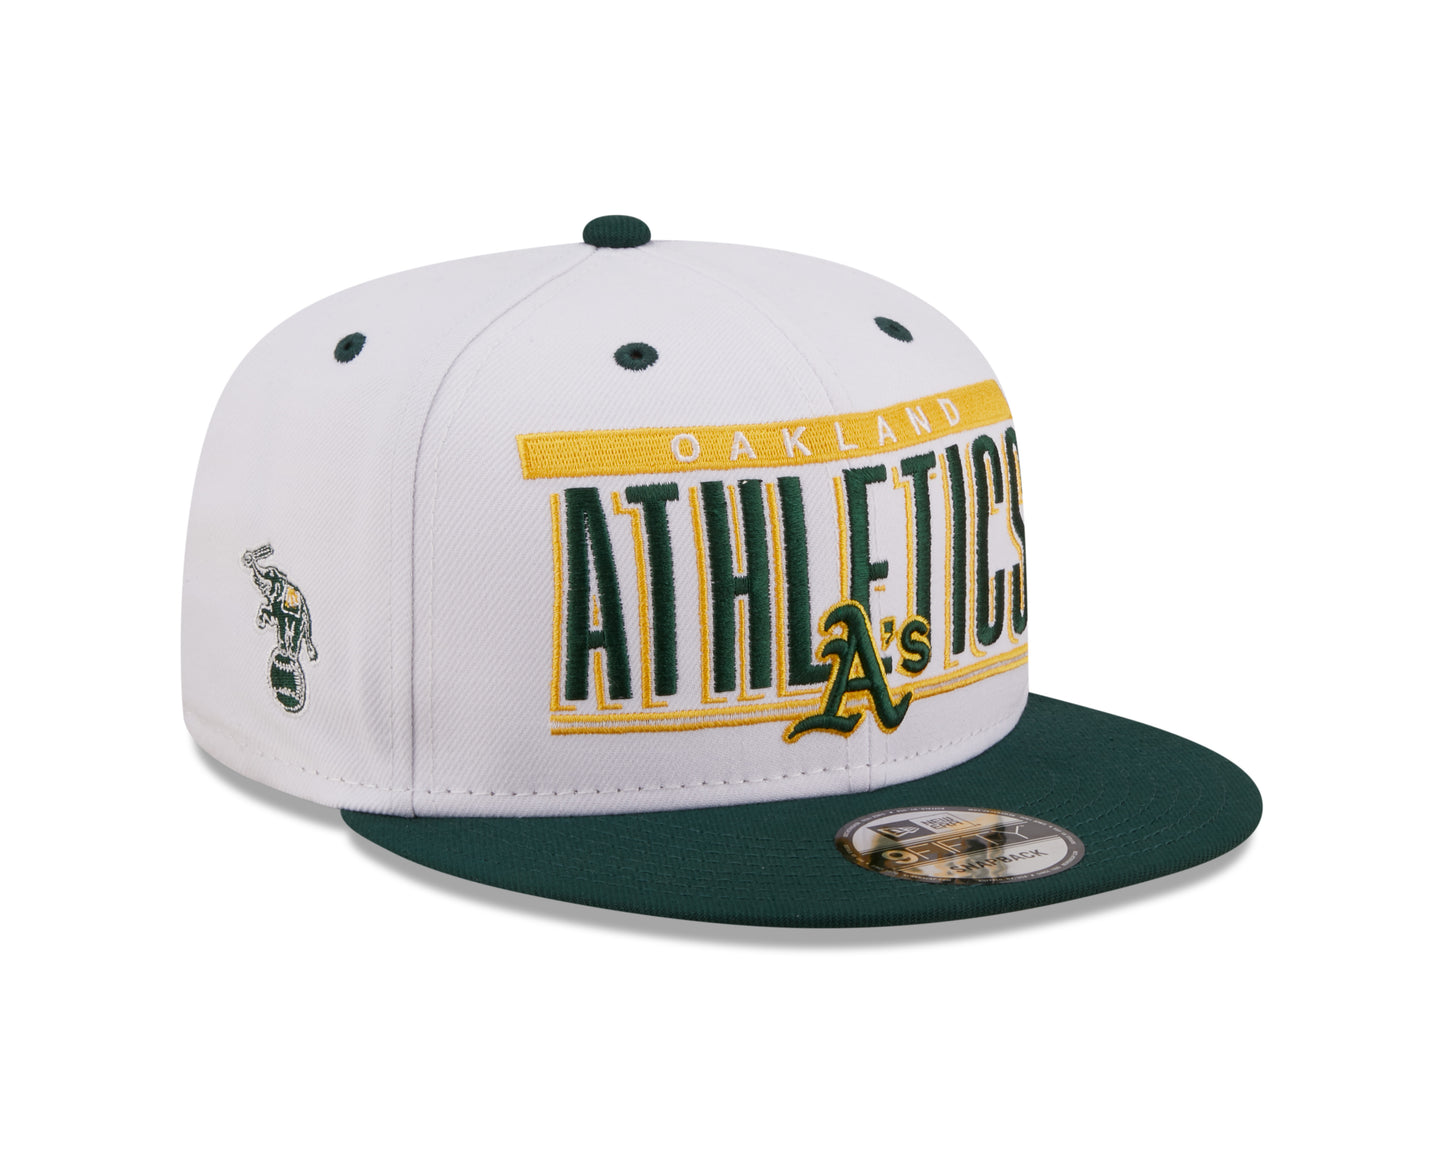 Oakland Athletics New Era Retro Title 9FIFTY Snapback Hat - White/